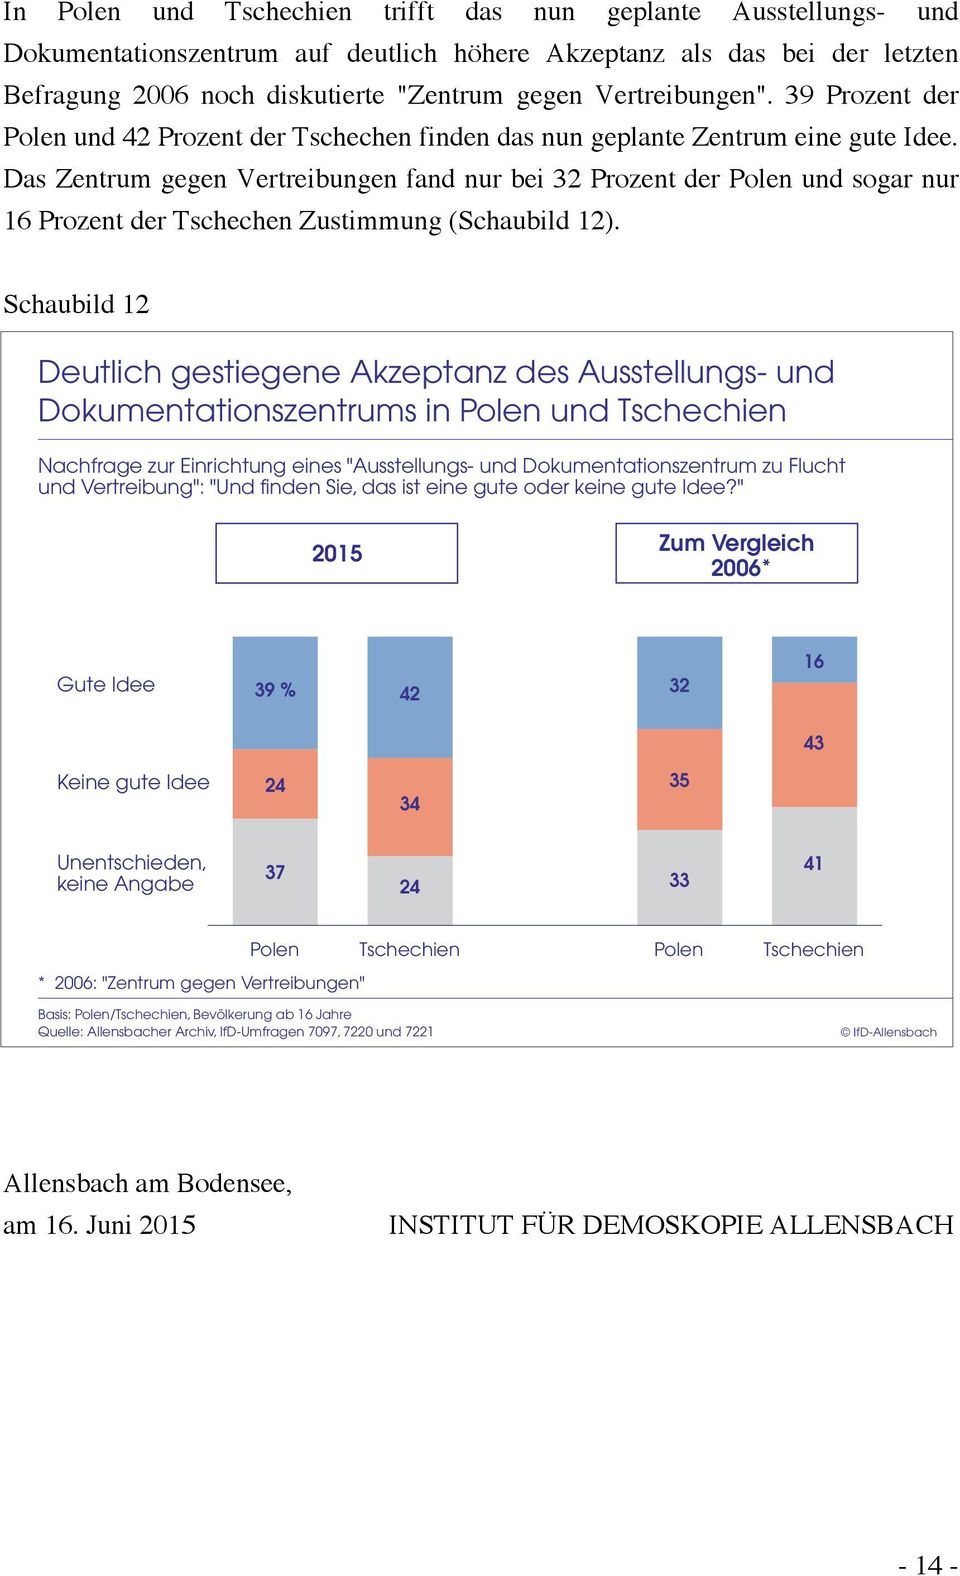 Das Zentrum gegen Vertreibungen fand nur bei 32 Prozent der Polen und sogar nur 16 Prozent der Tschechen Zustimmung (Schaubild 12).